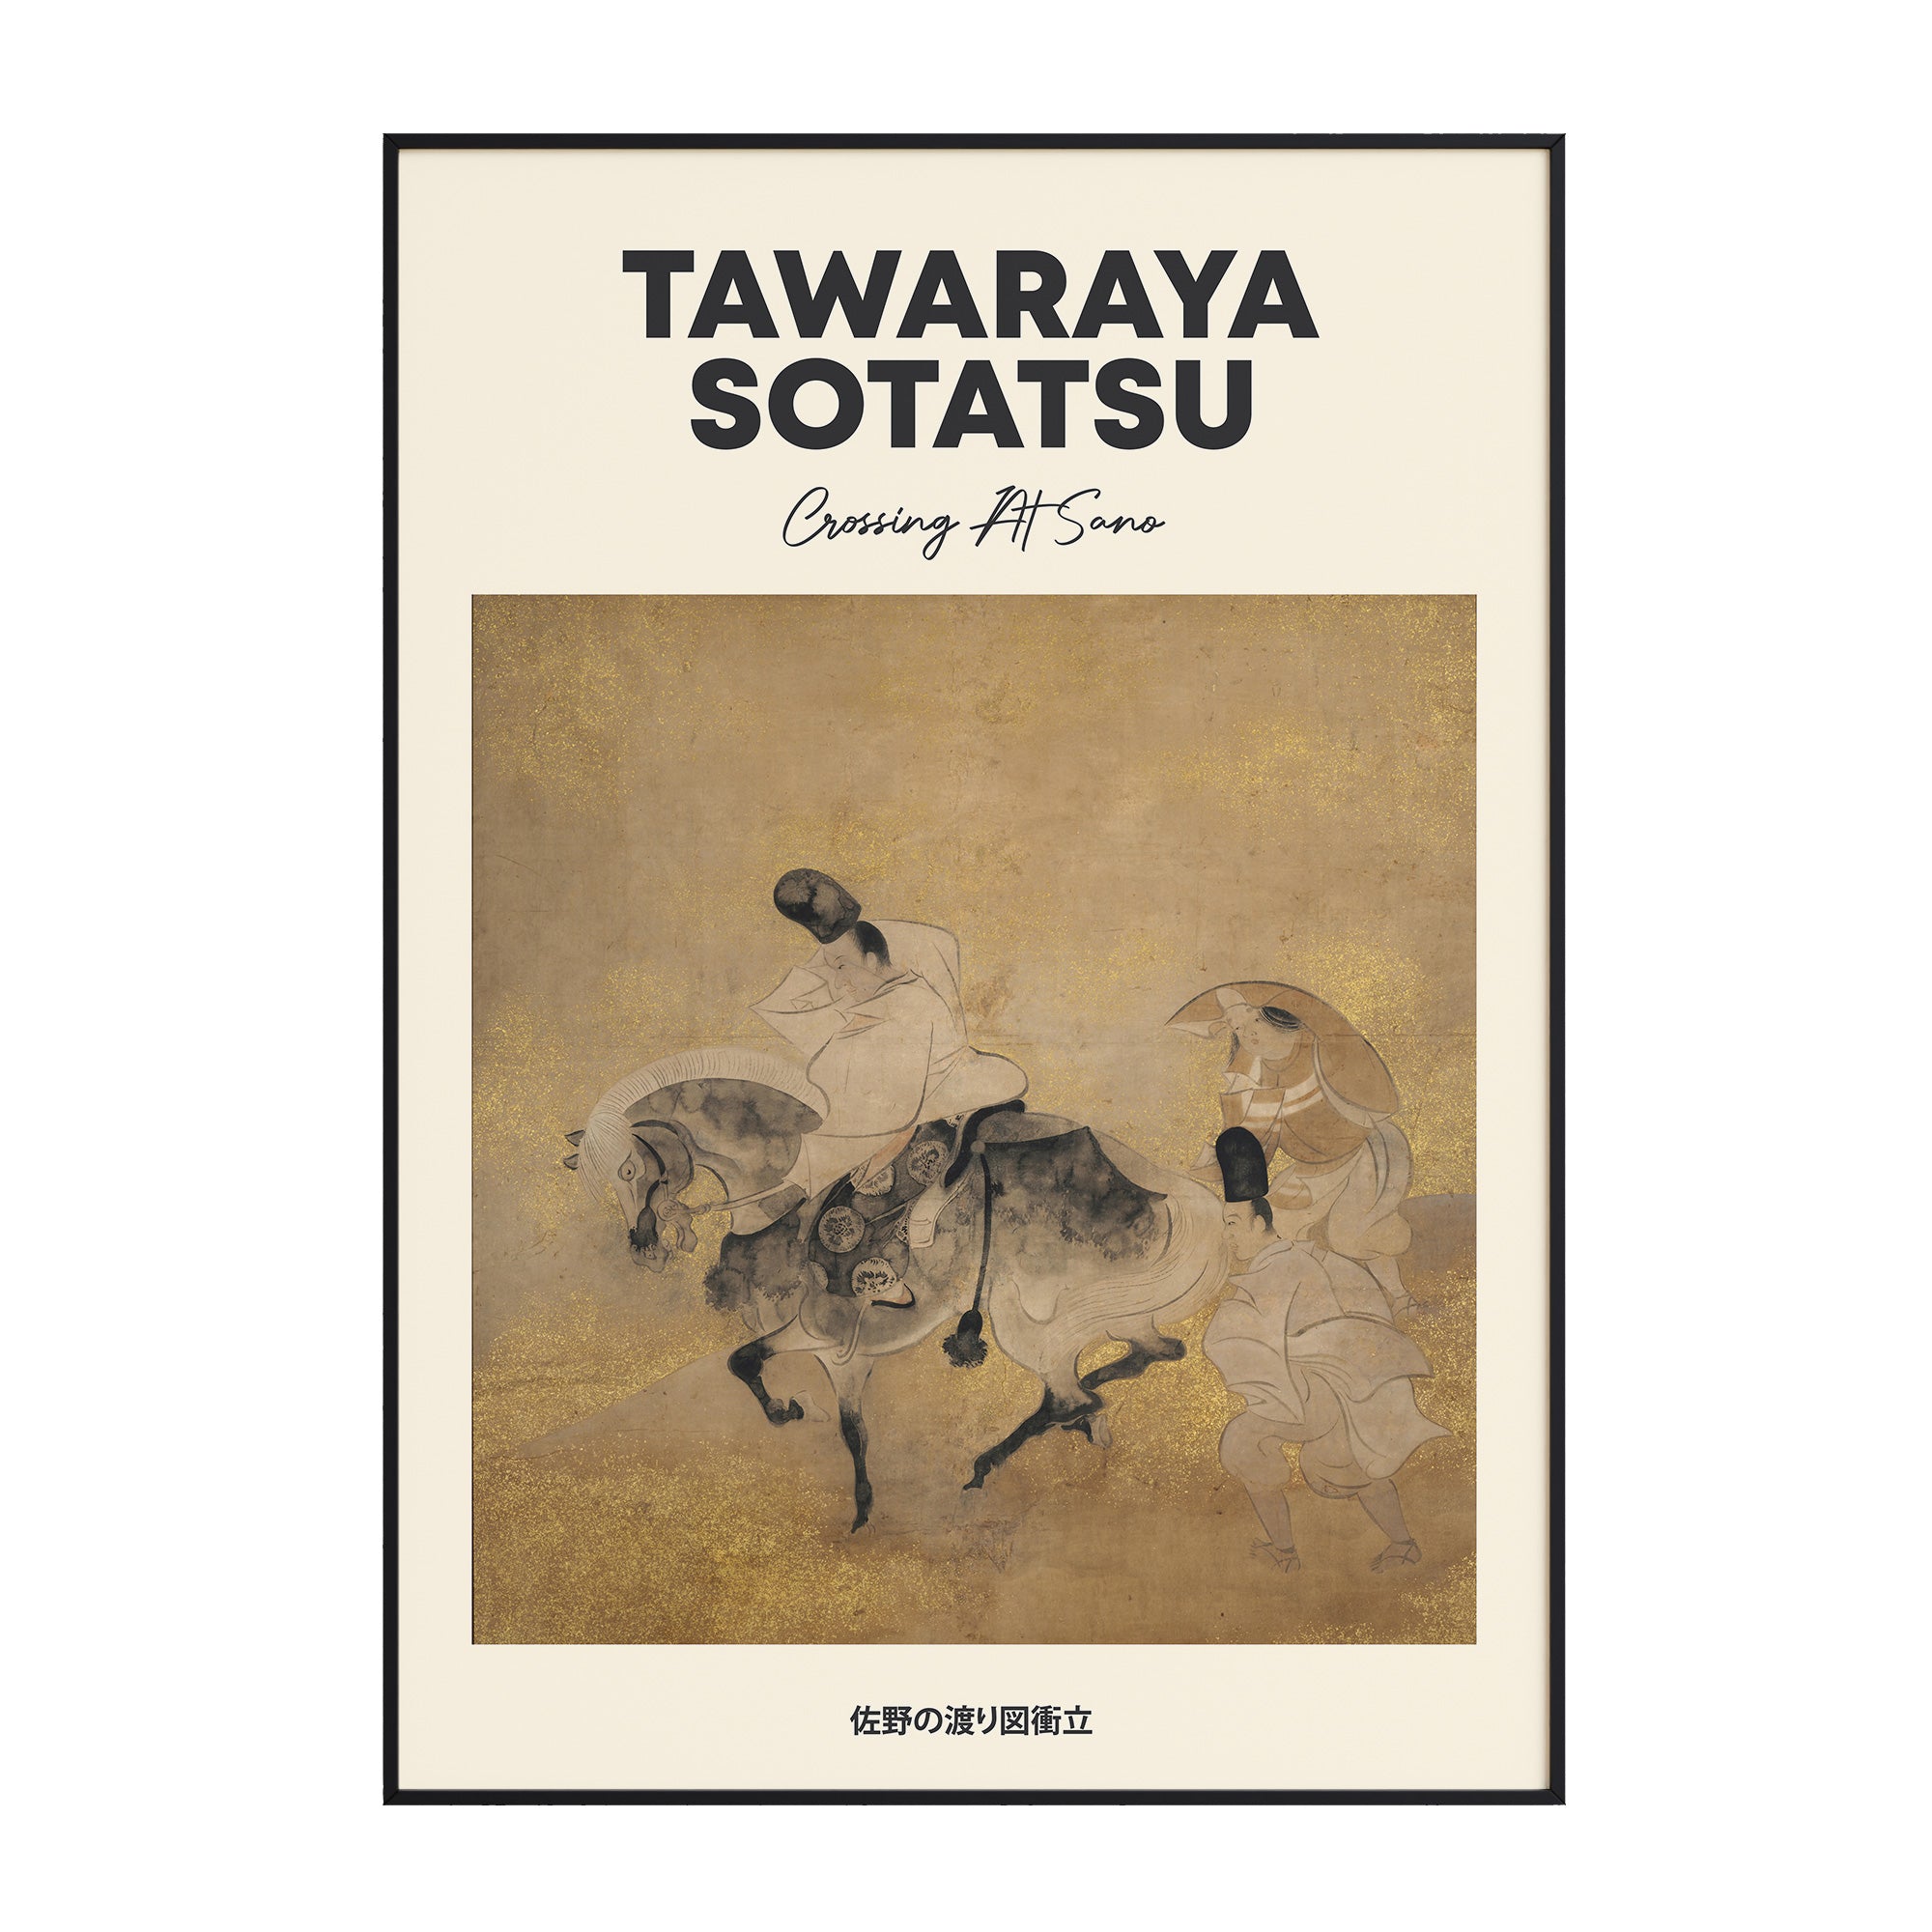 Tawaraya Sotatsu - Crossing At Sano